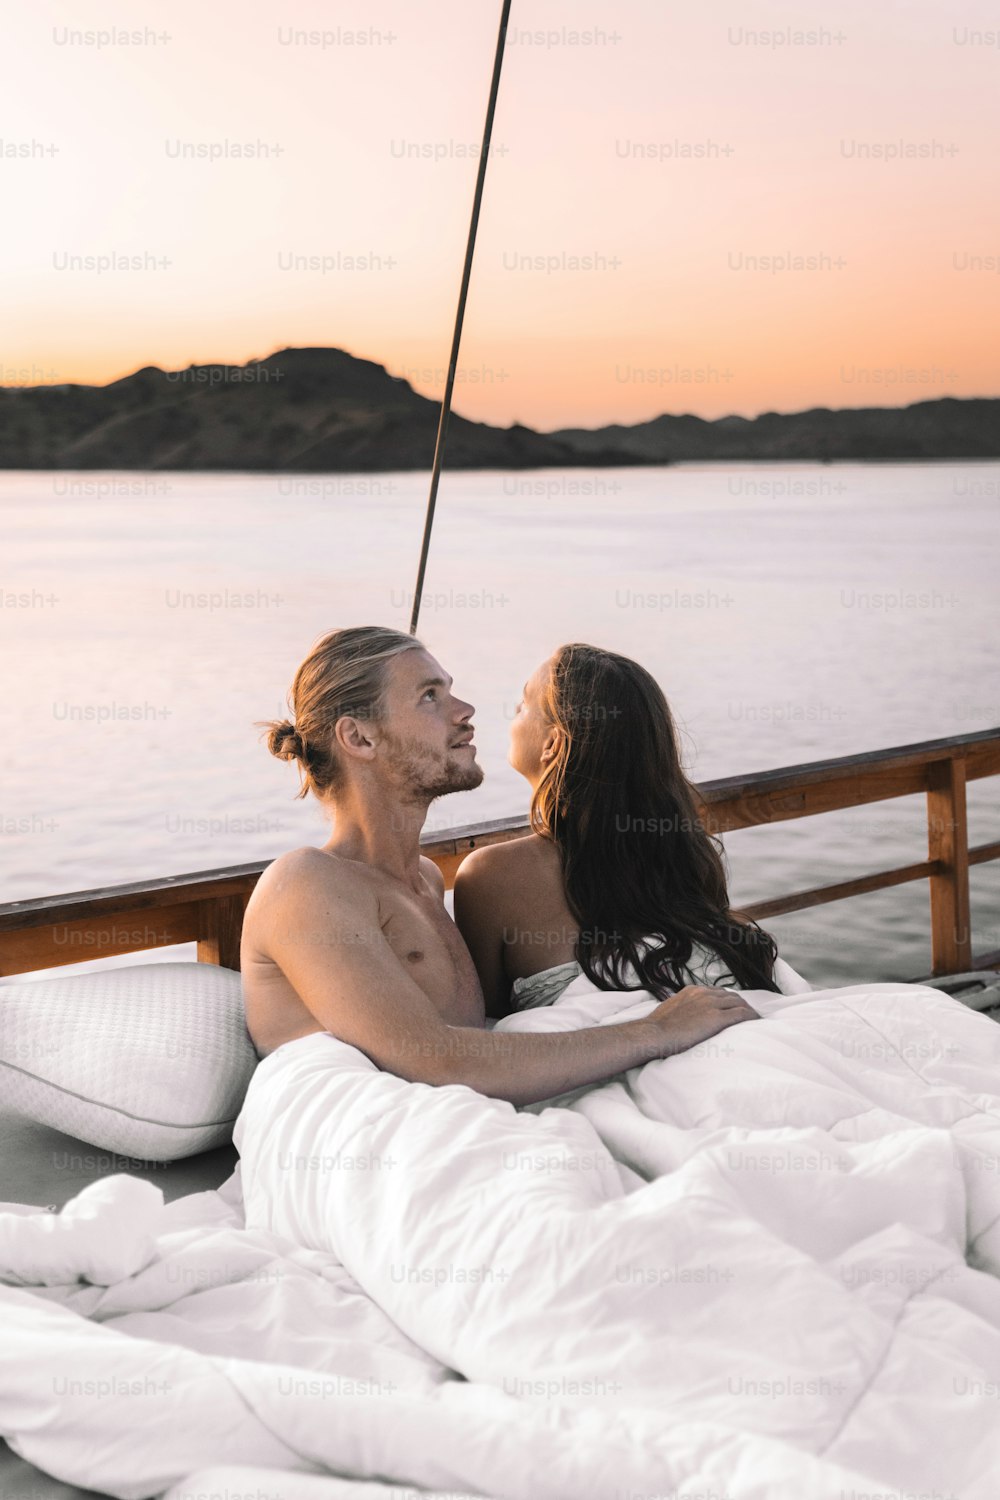 Un homme et une femme sont assis sur un bateau